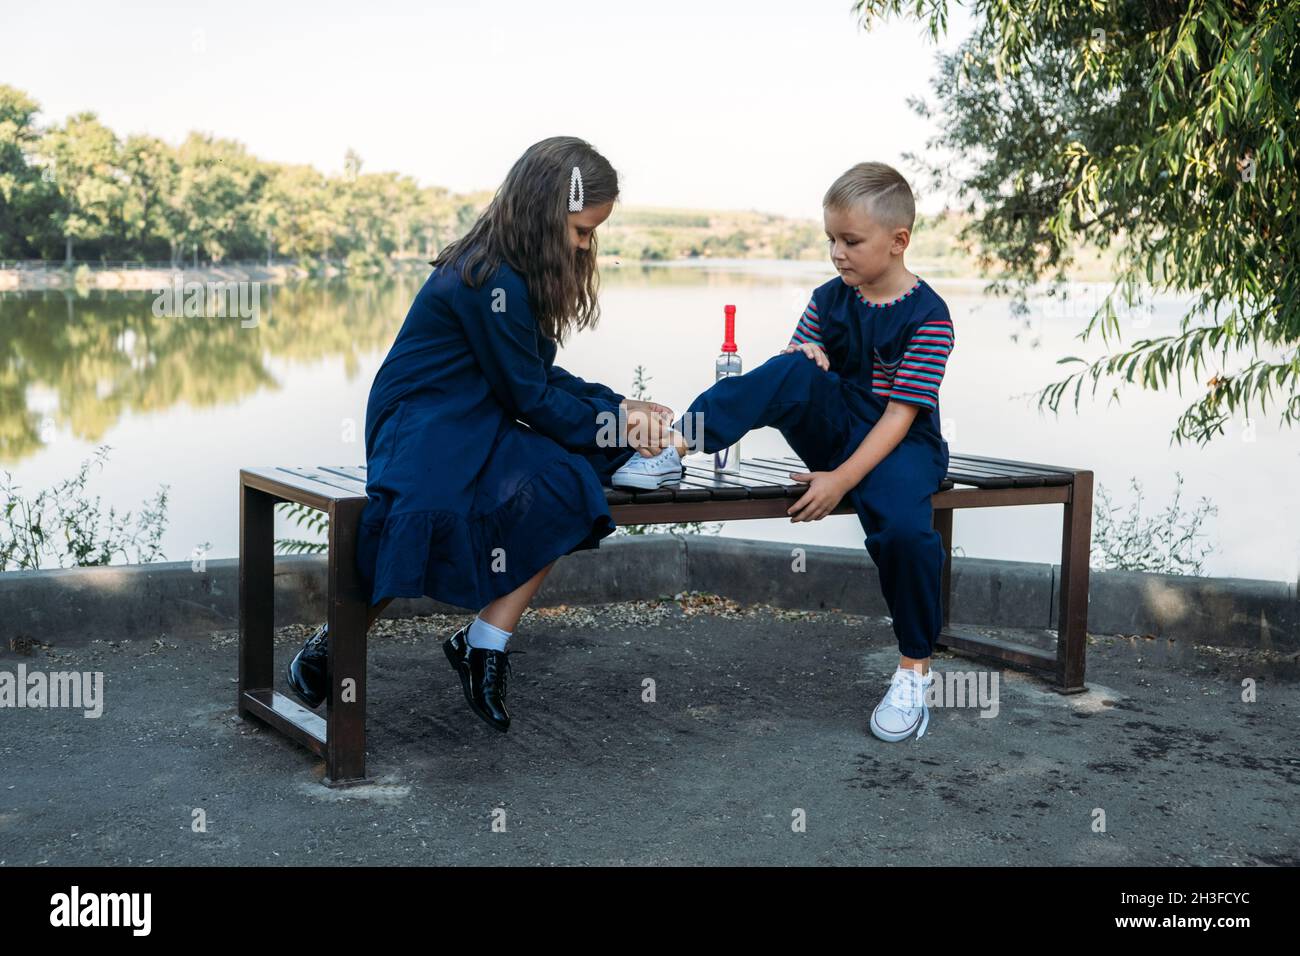 Где завязывают мальчиков. Брат и сестра на скамейке в школе. Мальчик помогает девочке фото. Мальчик завязывает шнурки девочке. Мальчик и девочка играют вместе.